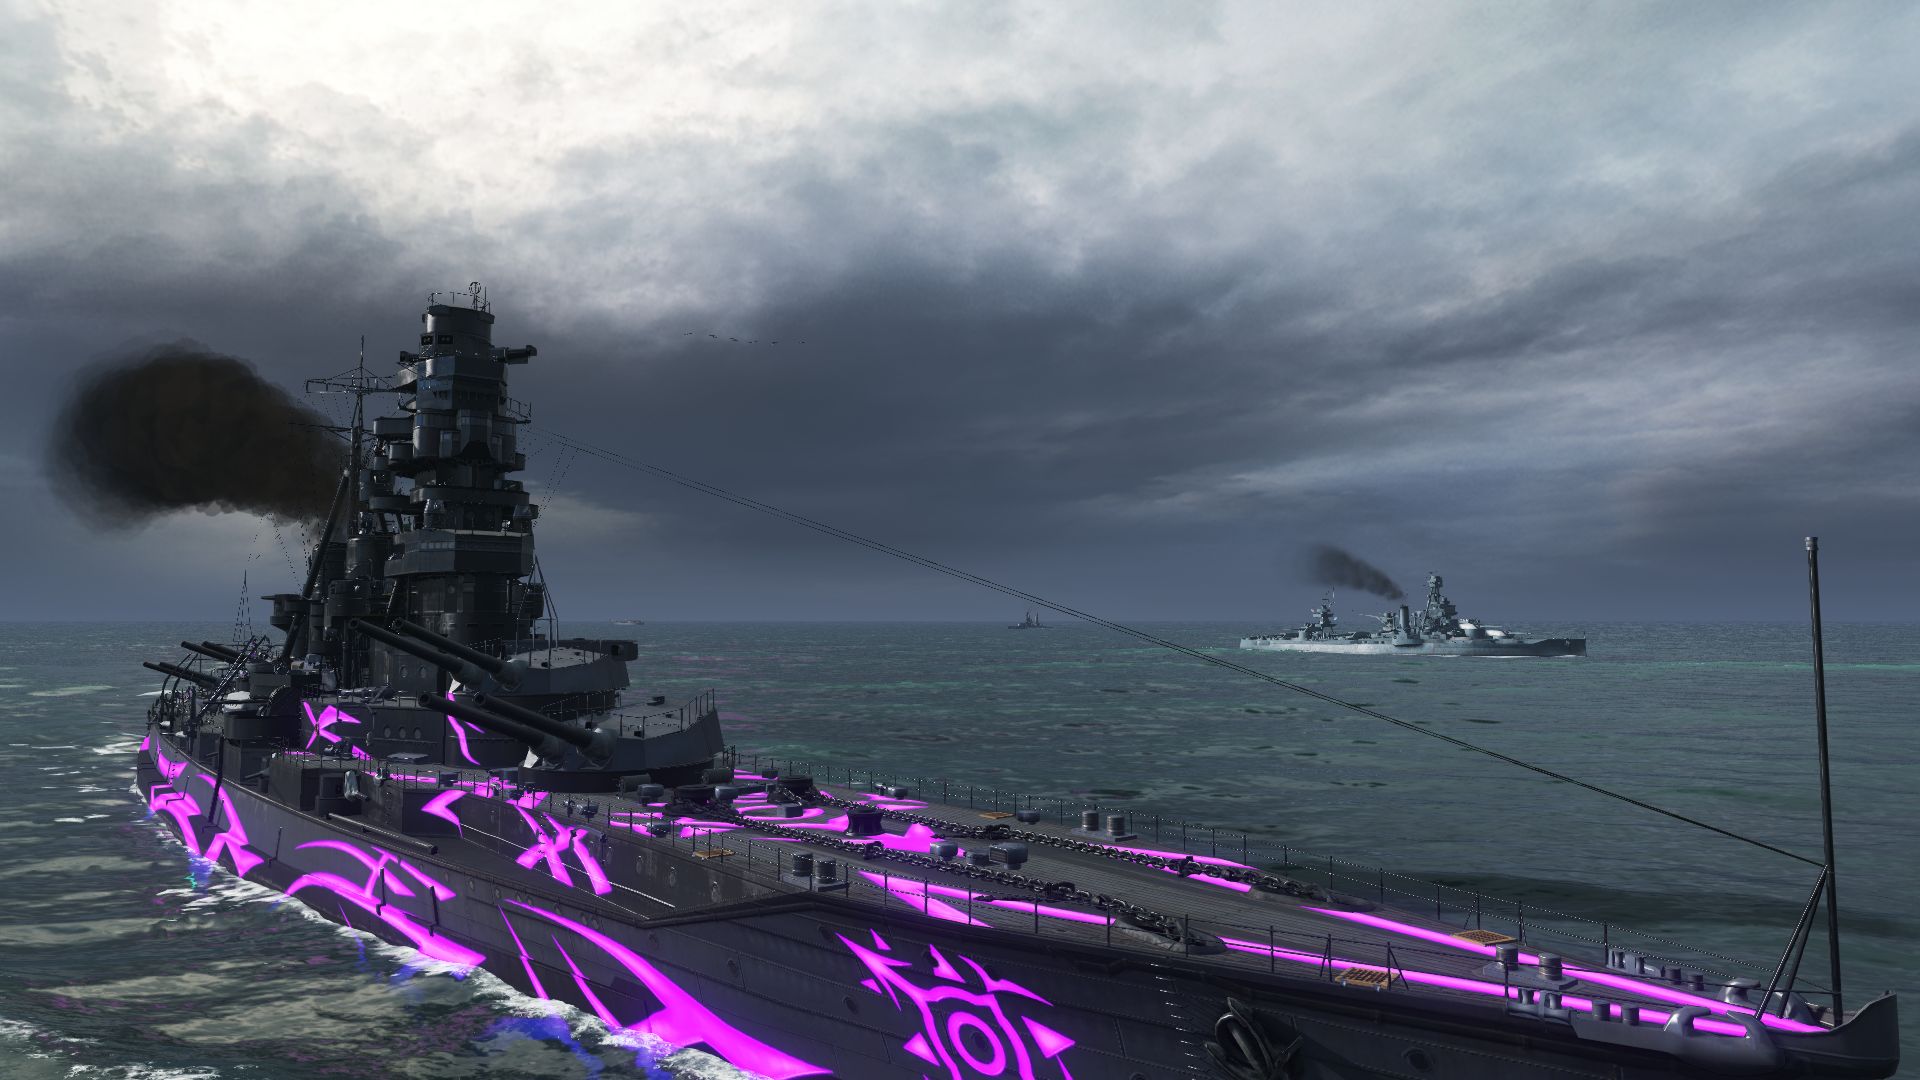 Free download wallpaper Video Game, World Of Warships, Japanese Battleship Kongō, Warships on your PC desktop